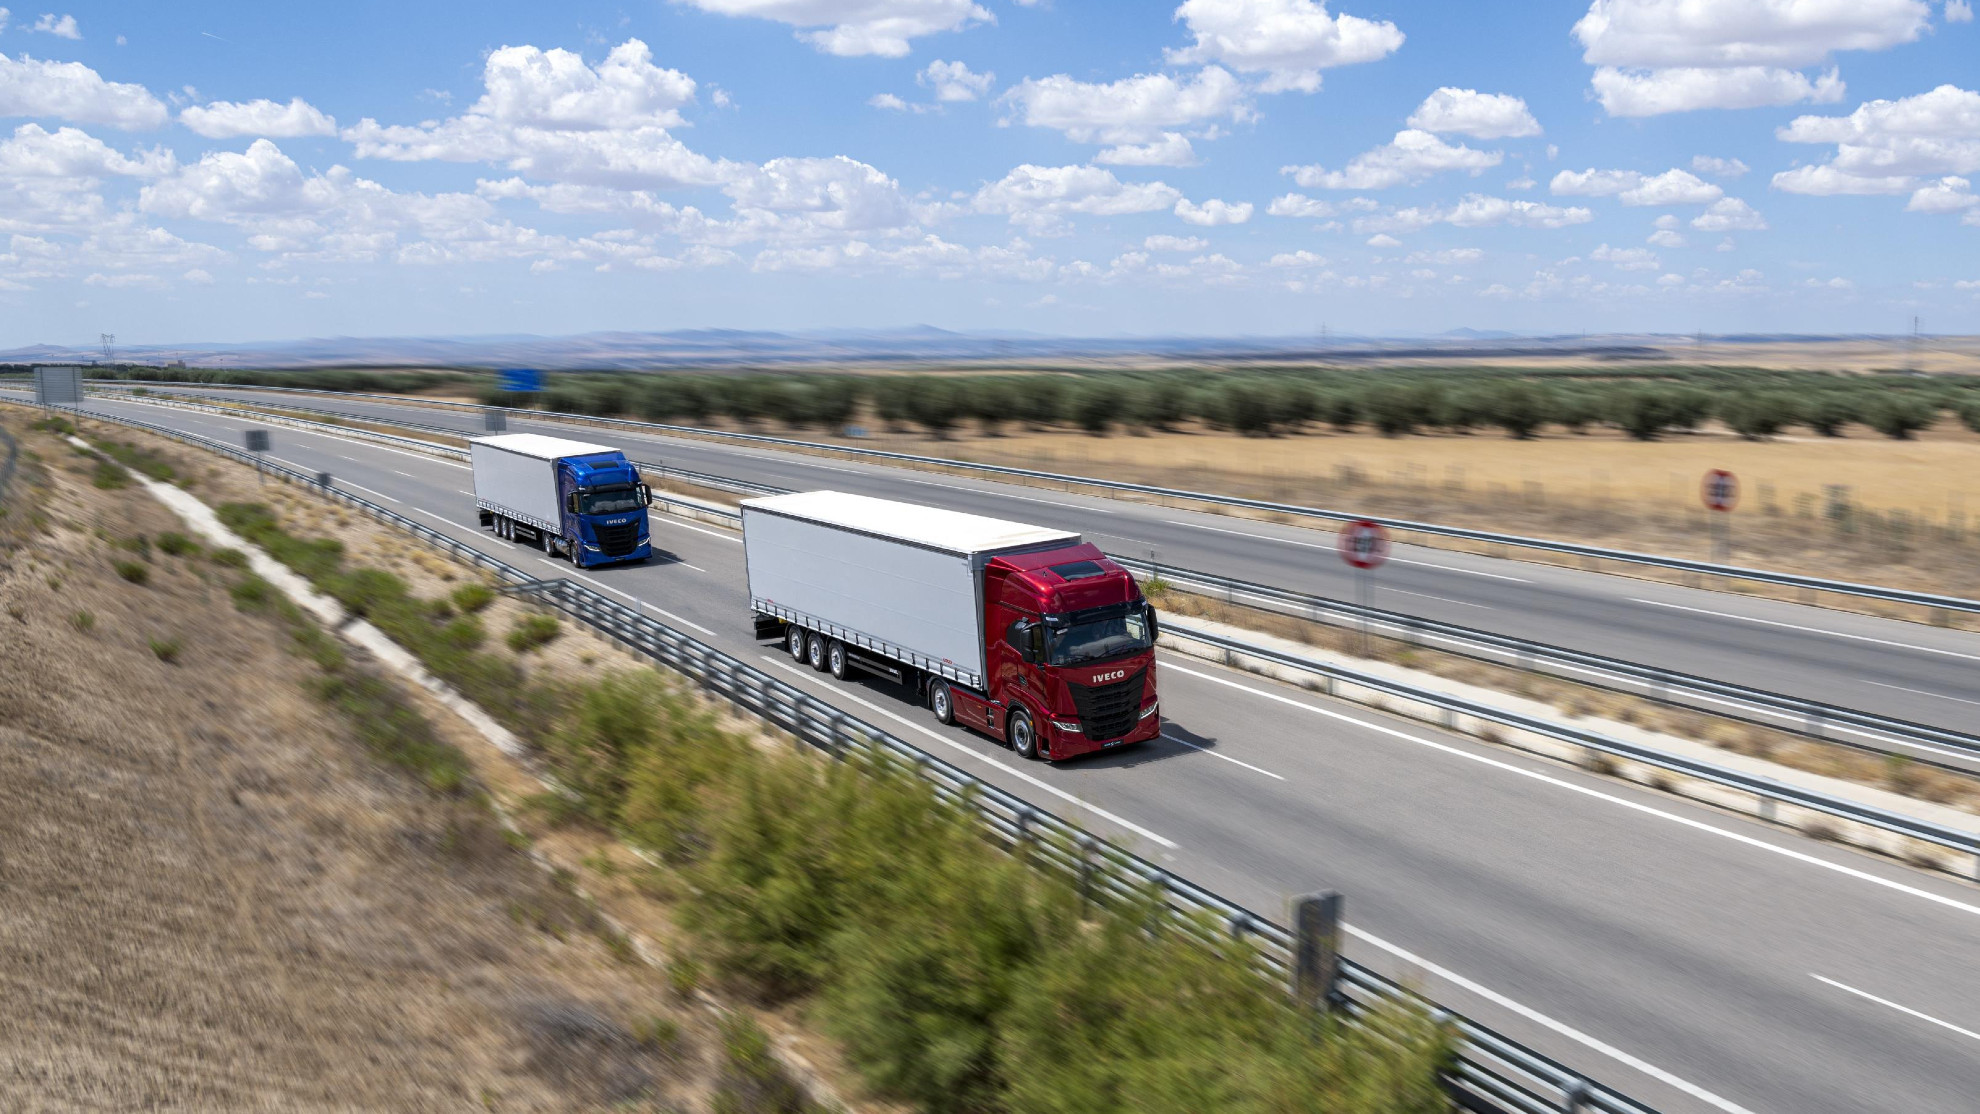 Huelga de camioneros - Transportistas - Paro indefinido - Plataforma Nacional - Gasoil